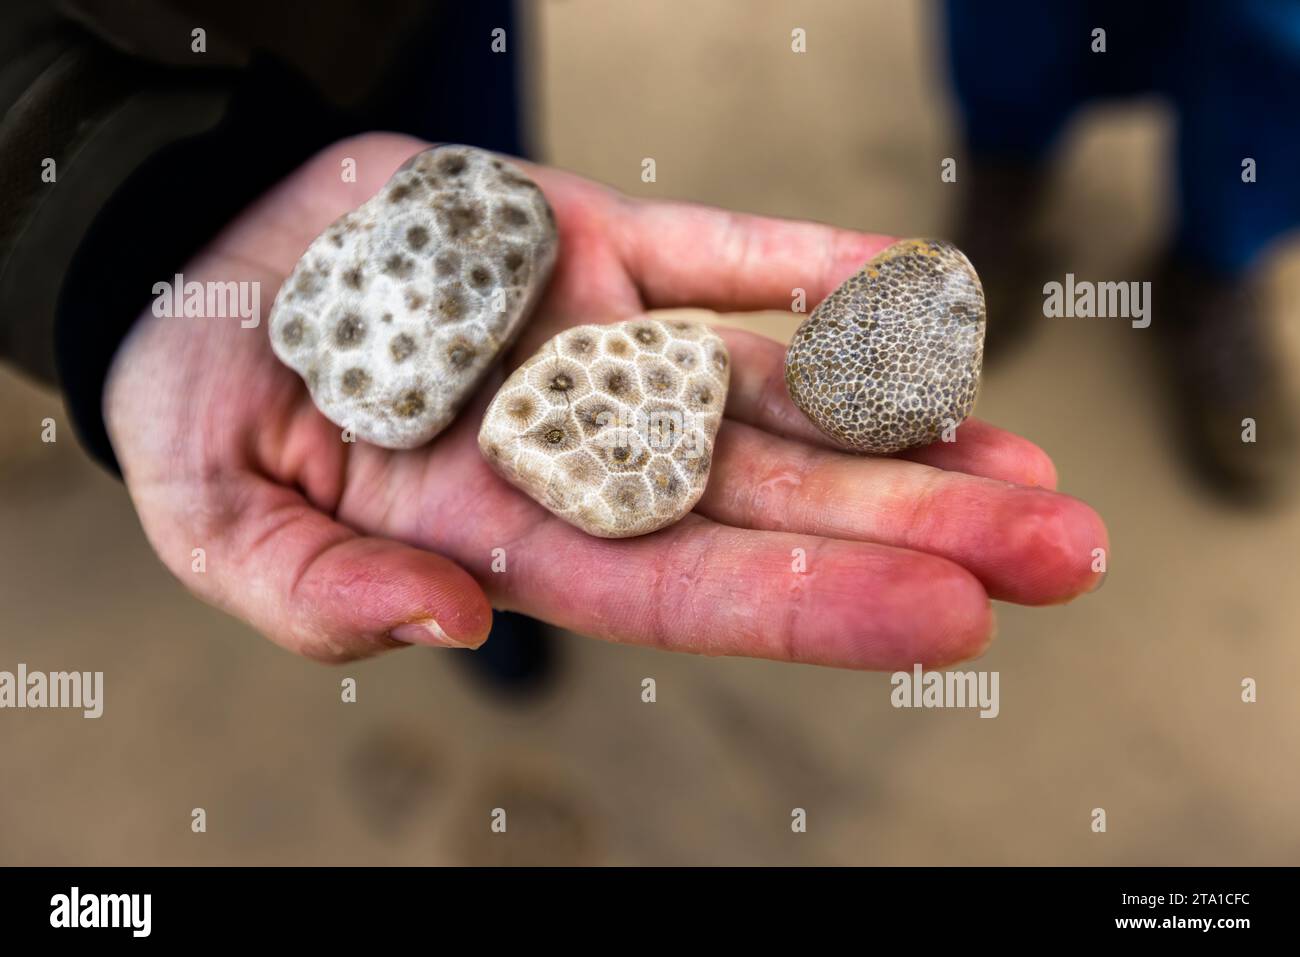 Petoskey Stein ist ein Stein, der als Edelstein poliert werden kann und aus fossilen Korallenskeletten besteht. Charlevoix- und Petoskey-Steine sind am Charlevoix-Strand zu finden, besonders bei starken Winden und Wellen. Charlevoix, Usa Stockfoto